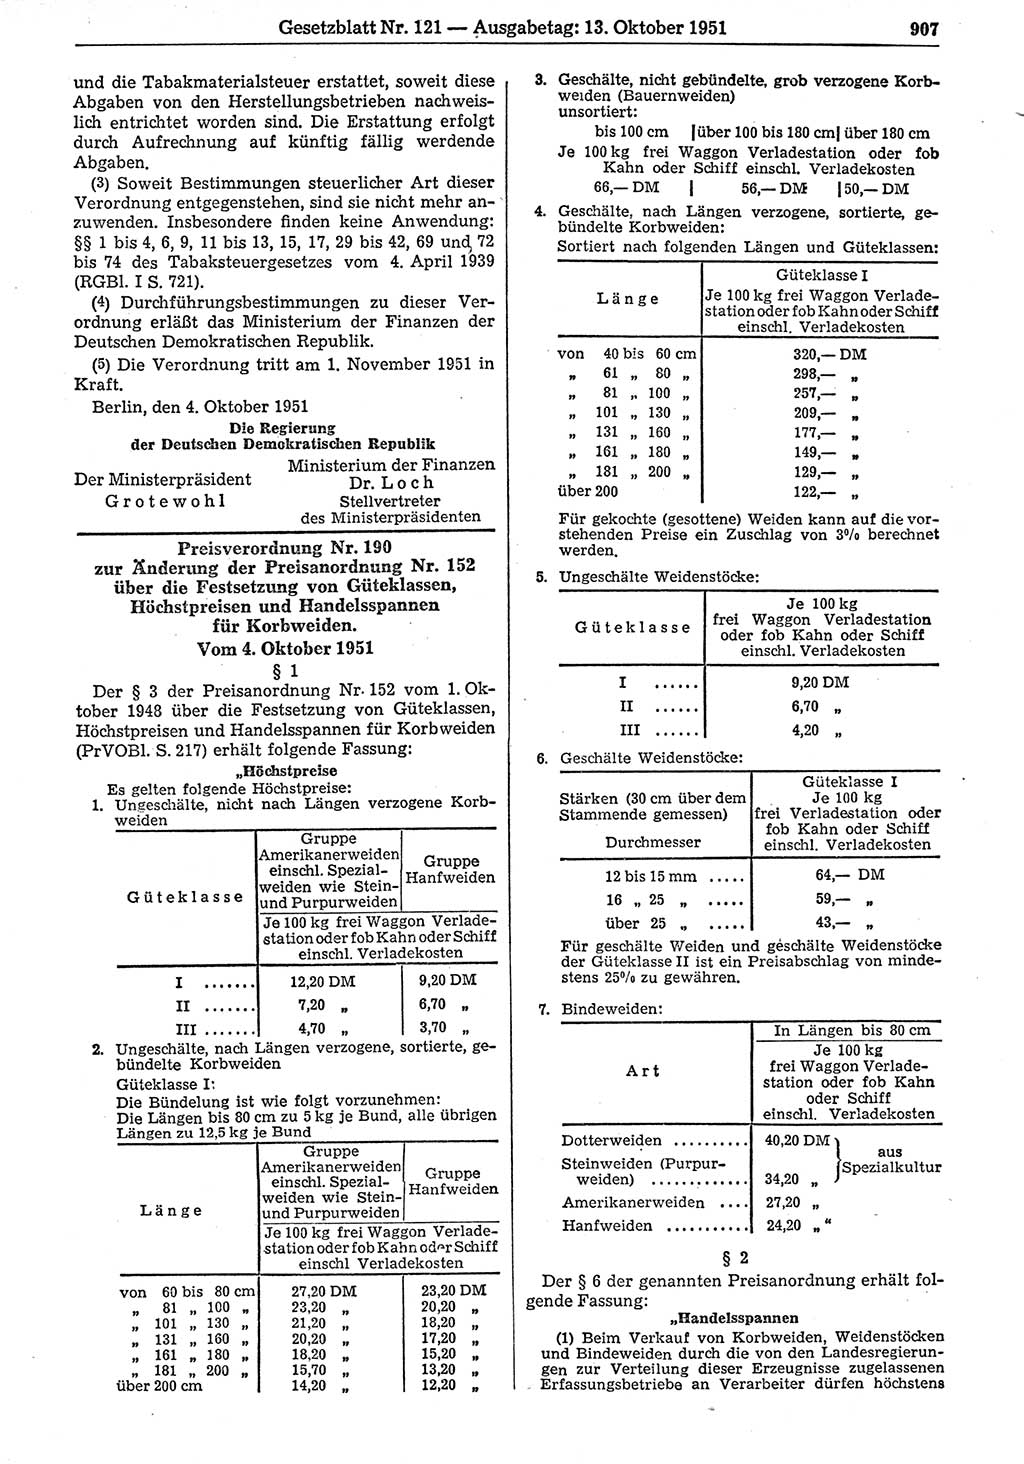 Gesetzblatt (GBl.) der Deutschen Demokratischen Republik (DDR) 1951, Seite 907 (GBl. DDR 1951, S. 907)